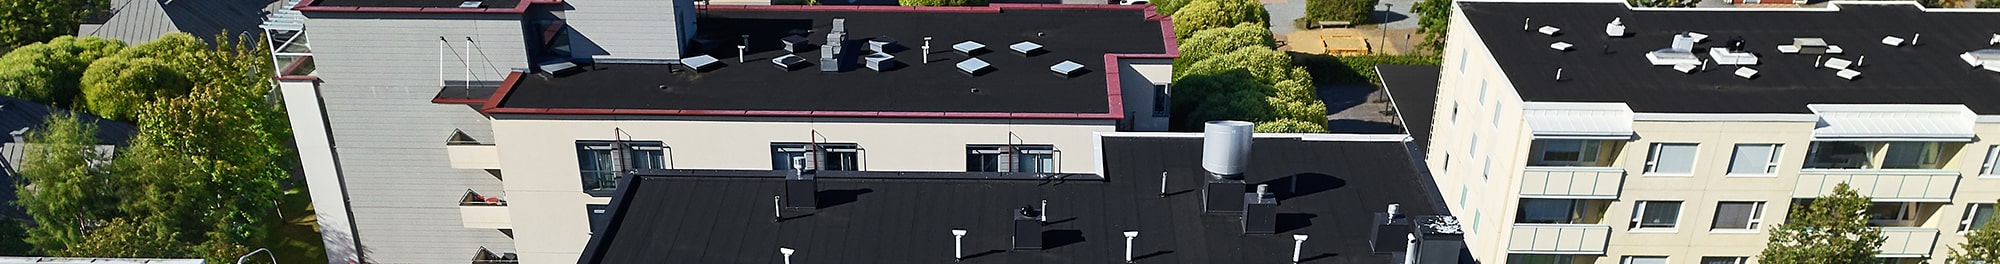 Commercial roofing contractors in Racine County 